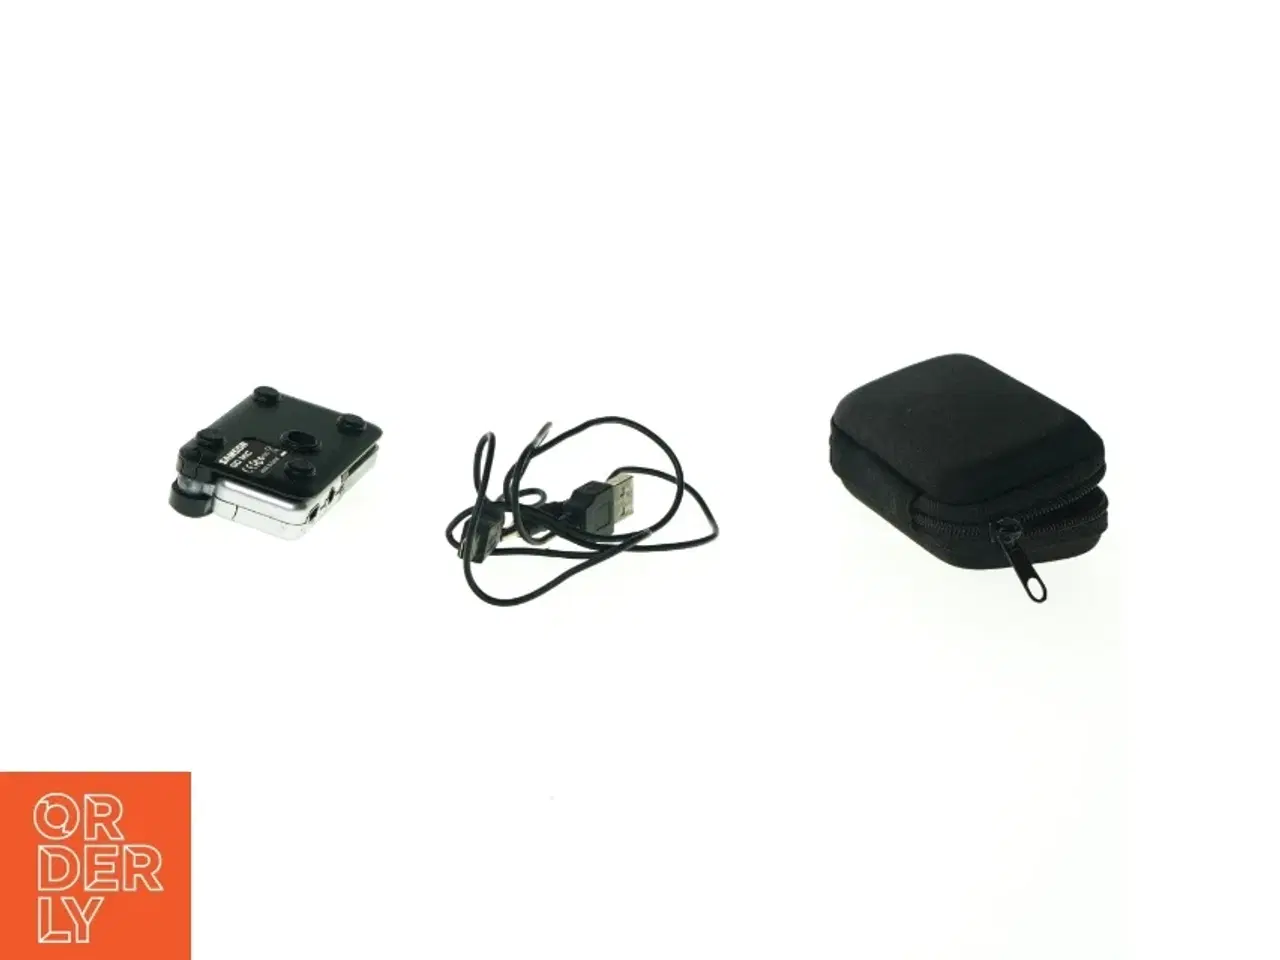 Billede 1 - Go Mic USB Mikrofon fra Samson (str. 8 x 5 cm)